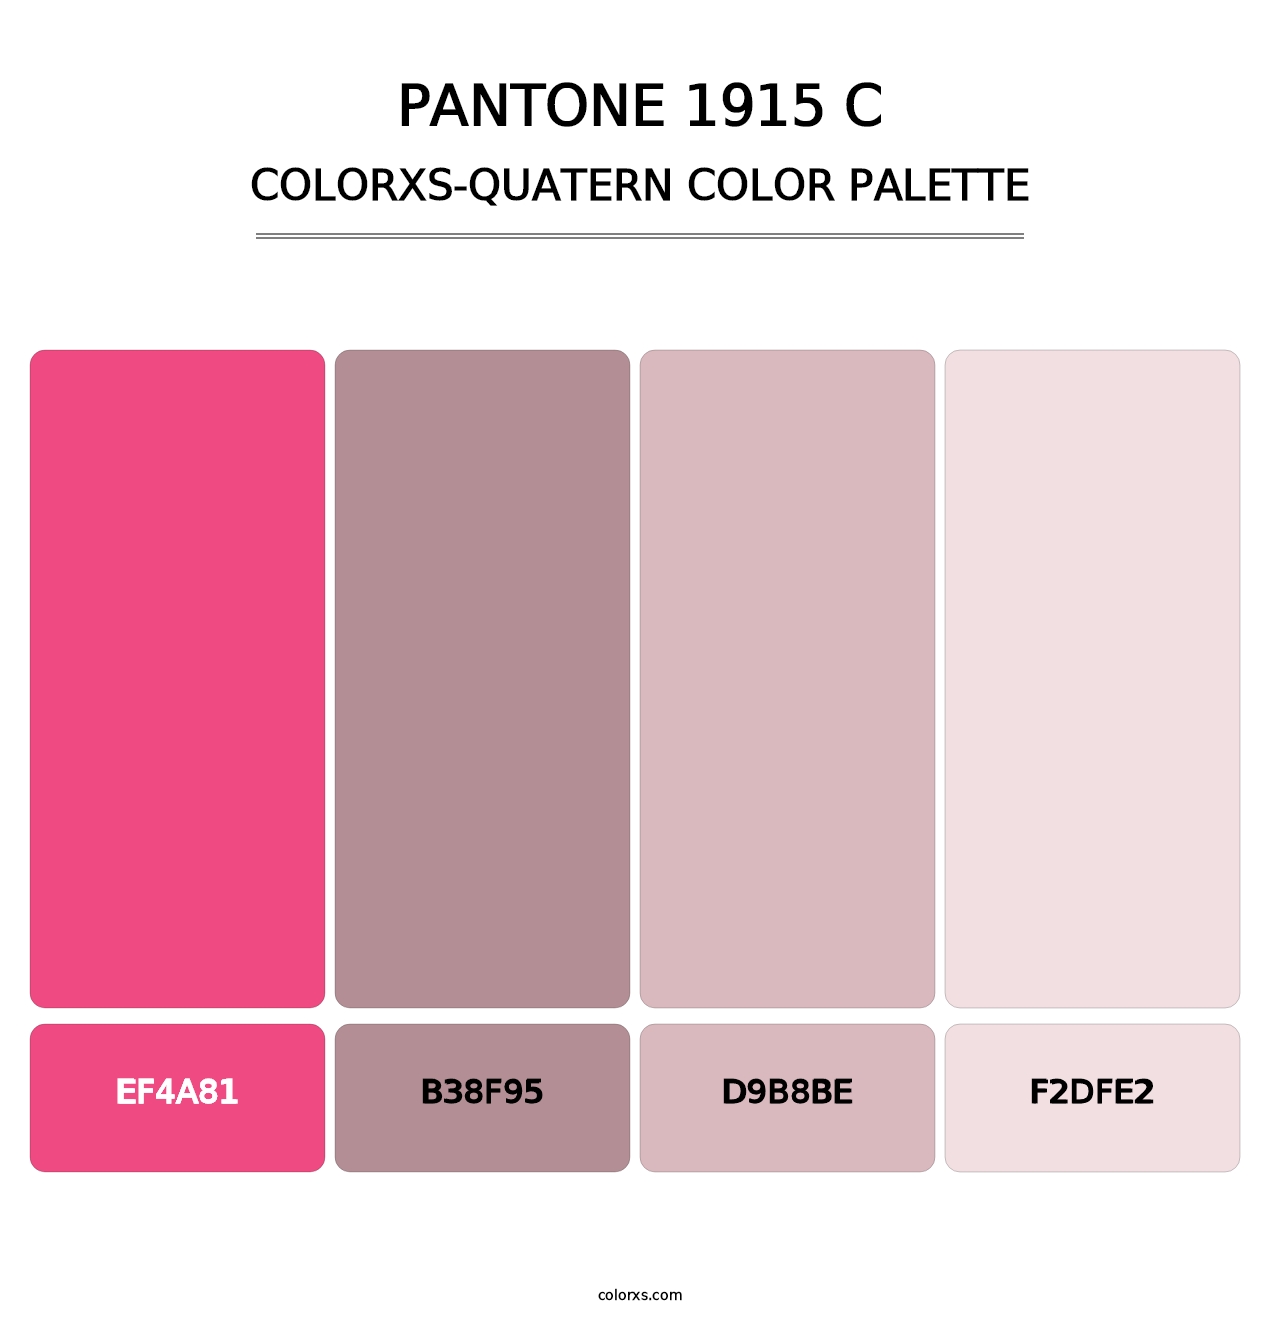 PANTONE 1915 C - Colorxs Quatern Palette